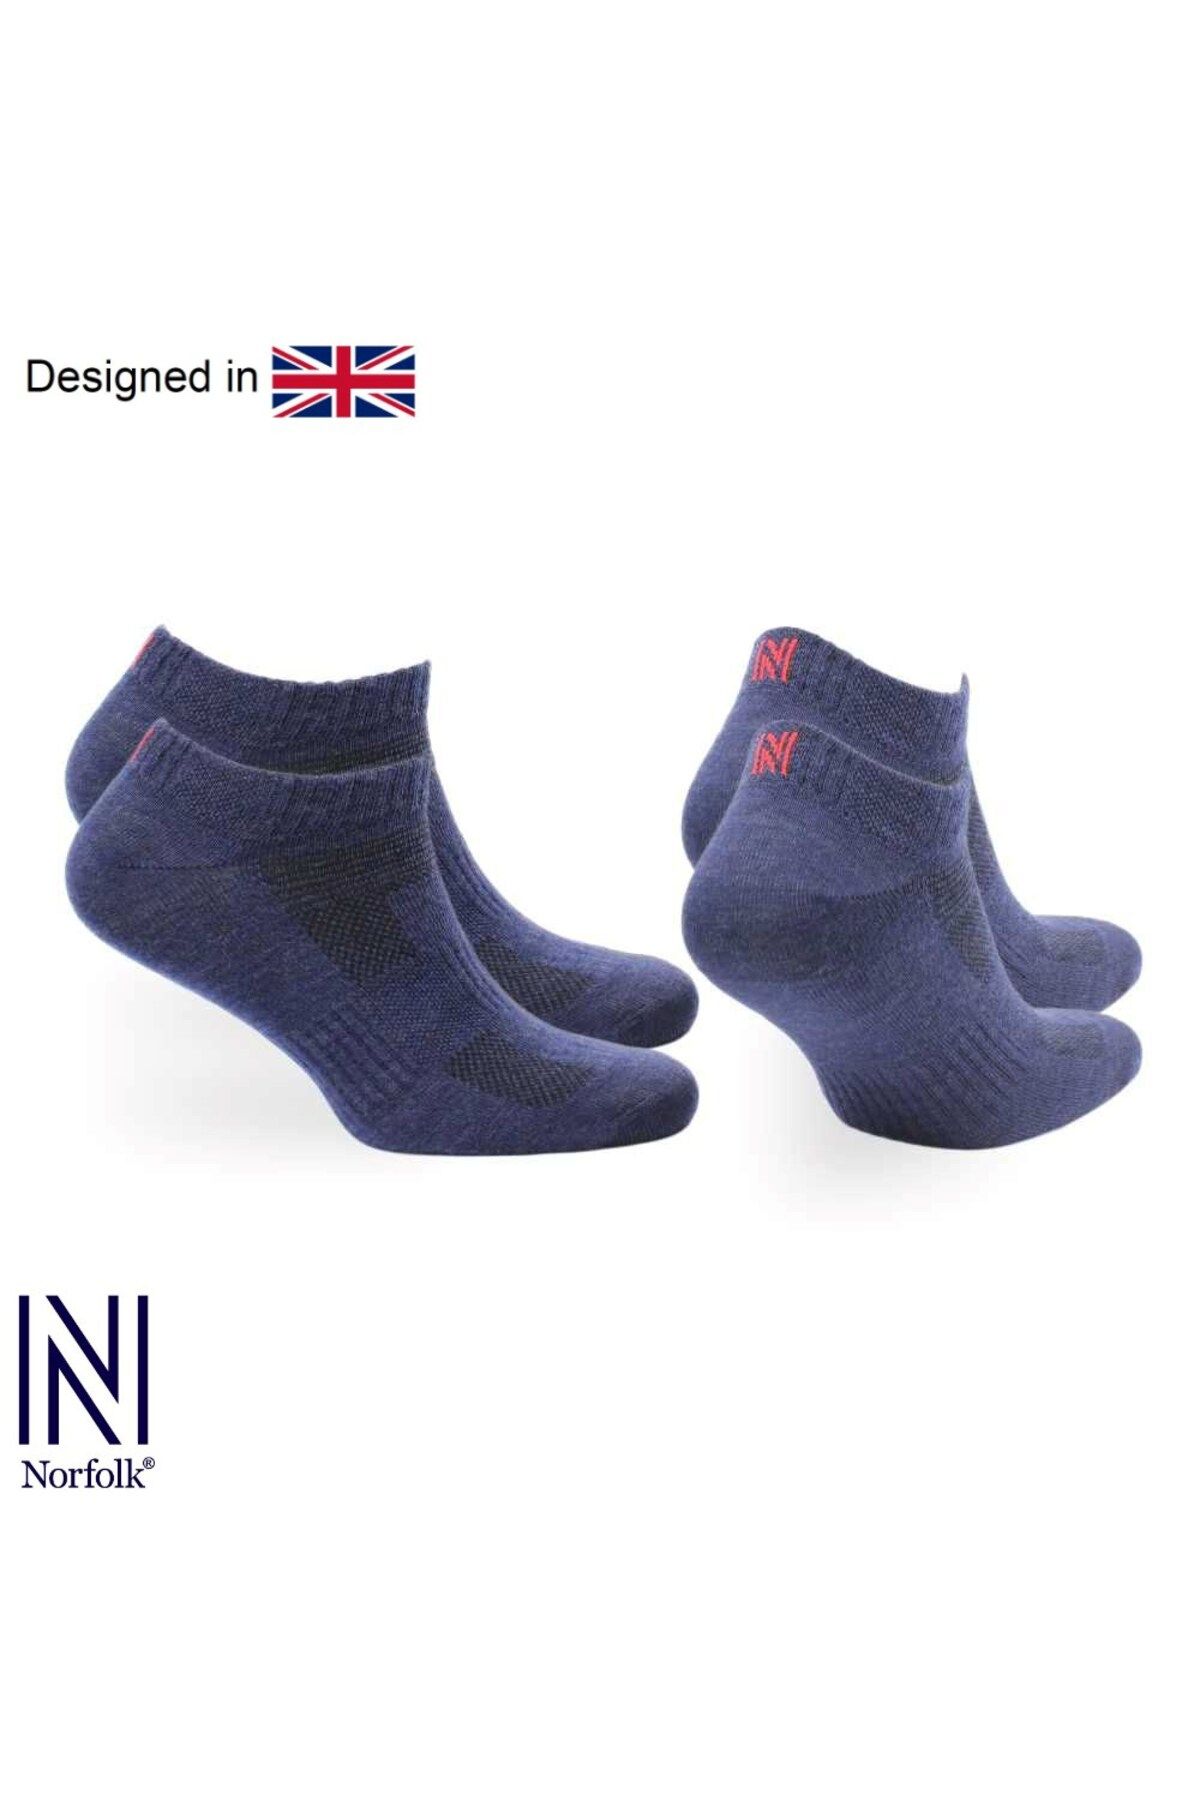 Norfolk SHELDON LC Düşük Kesim Merino Yünü Outdoor Yürüyüş Çorapları 2'li Paket